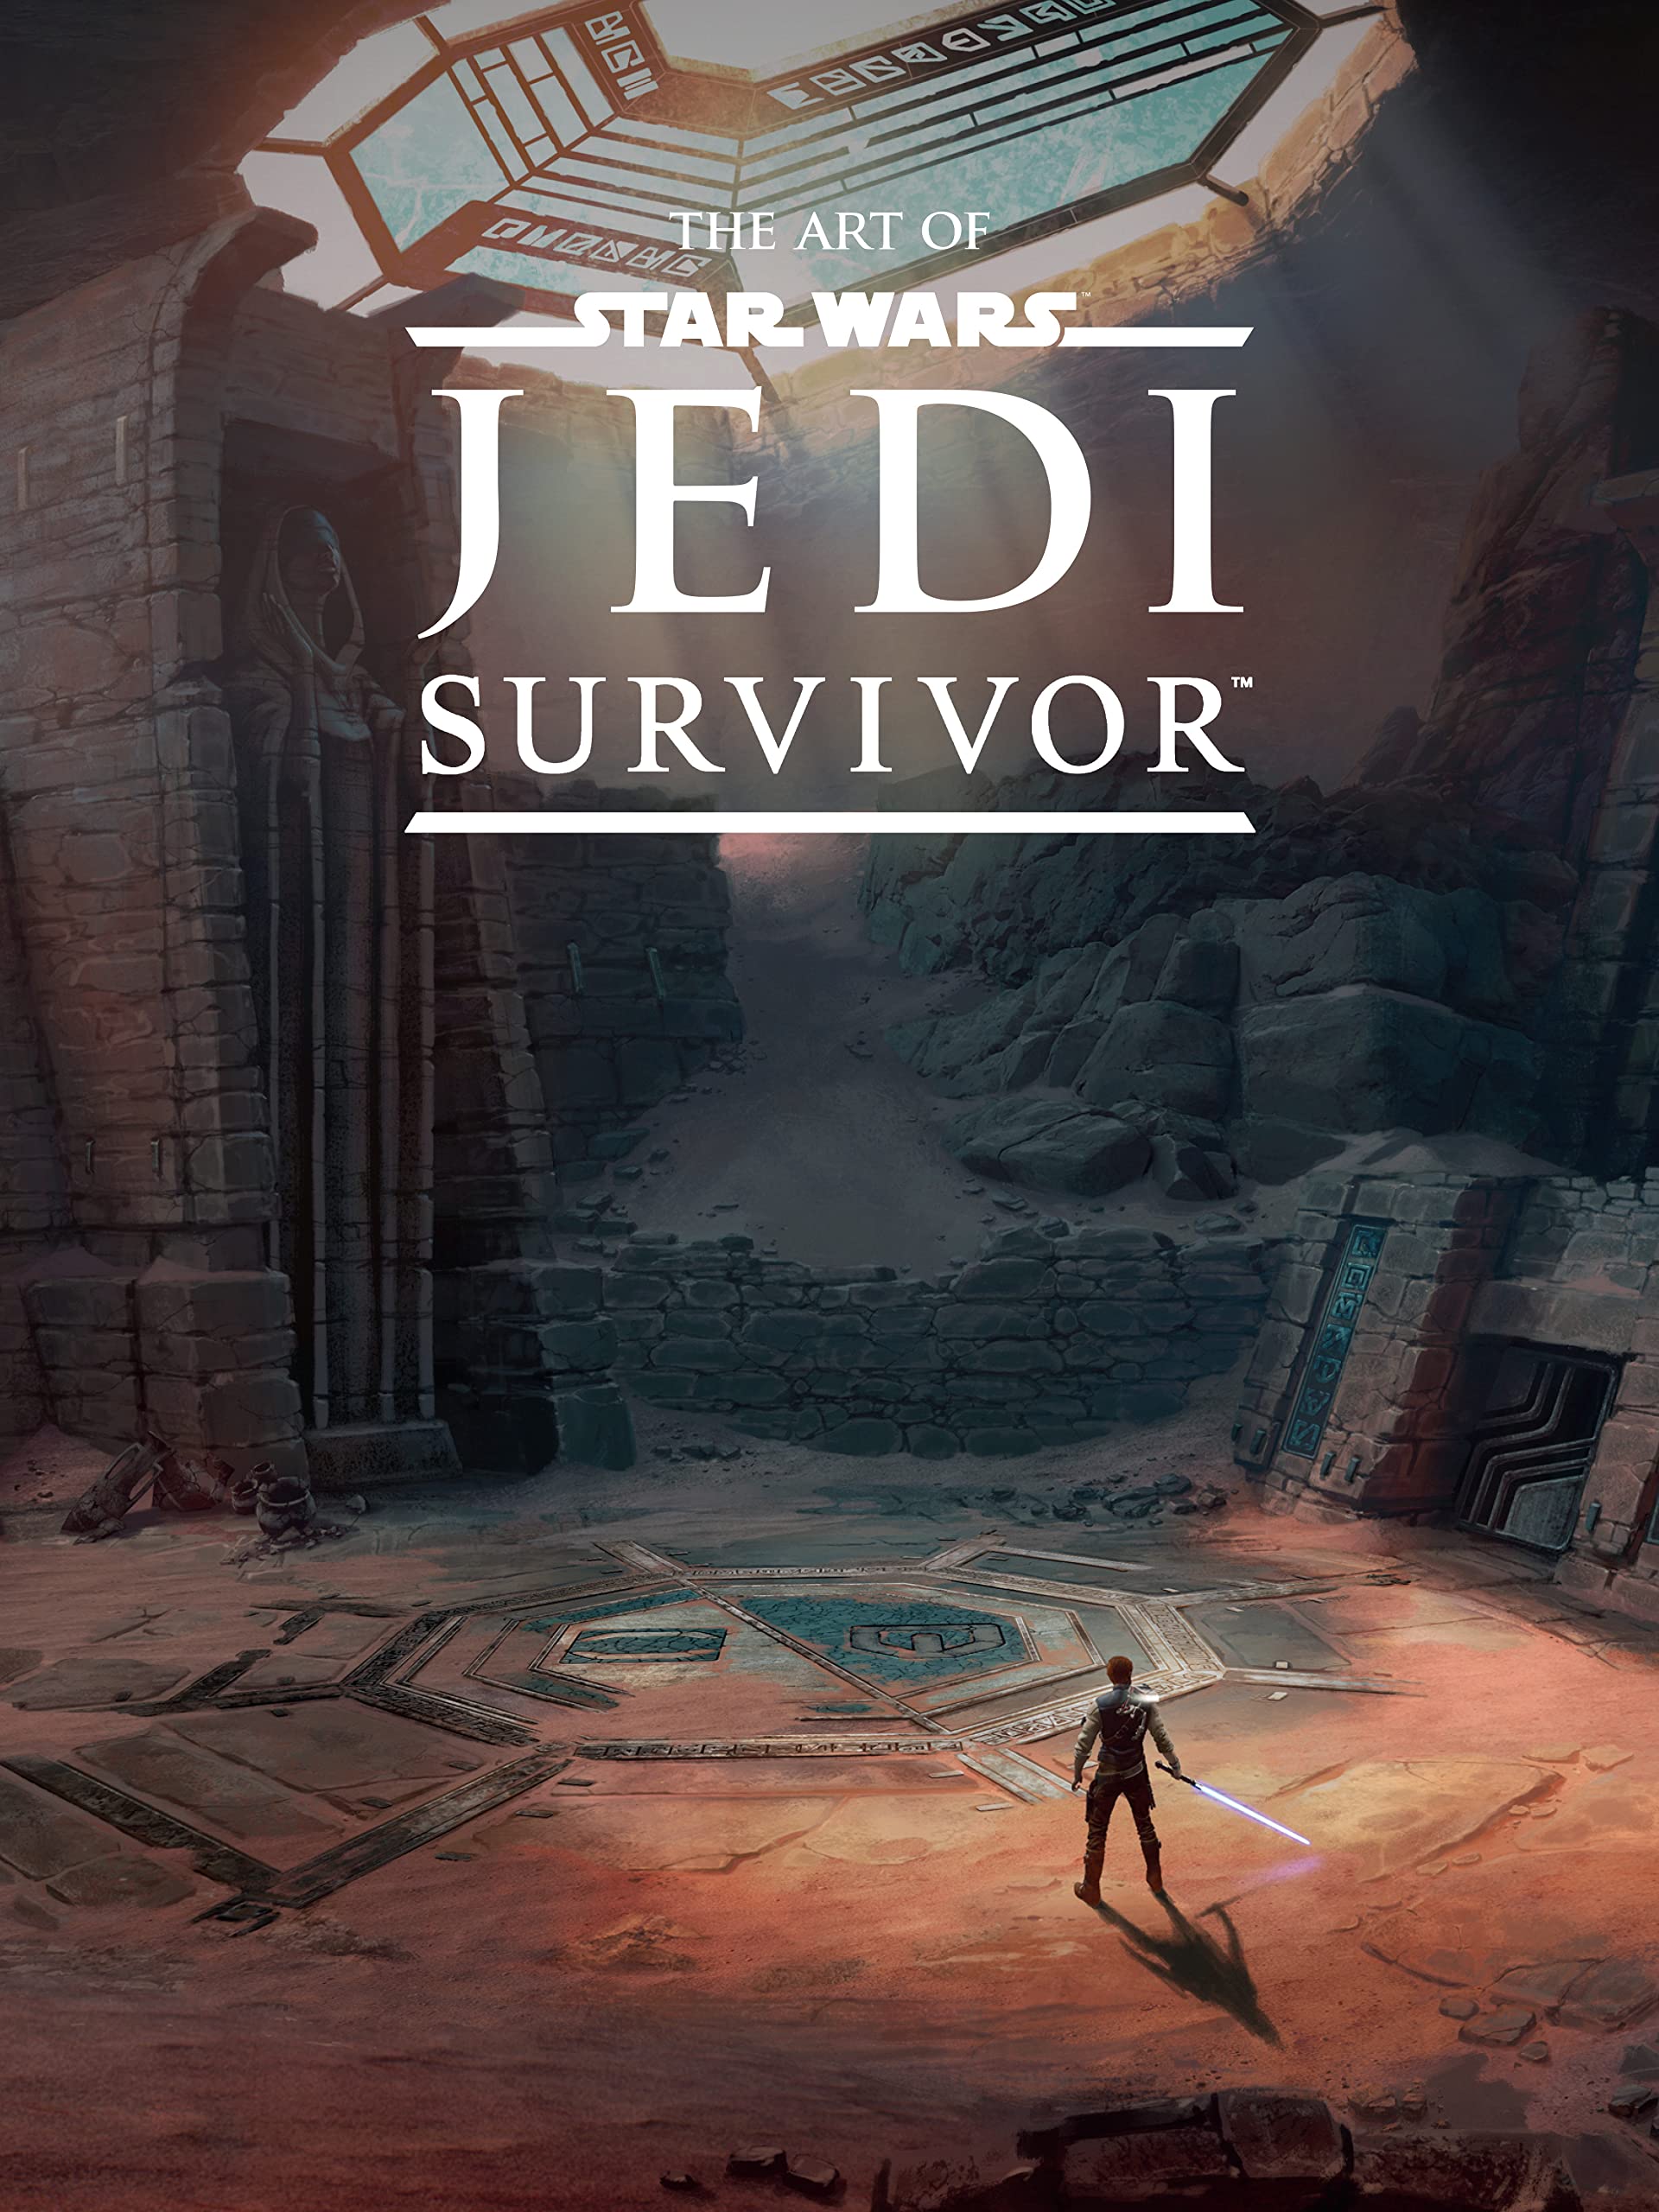 Is Star Wars Jedi Survivor Canon?